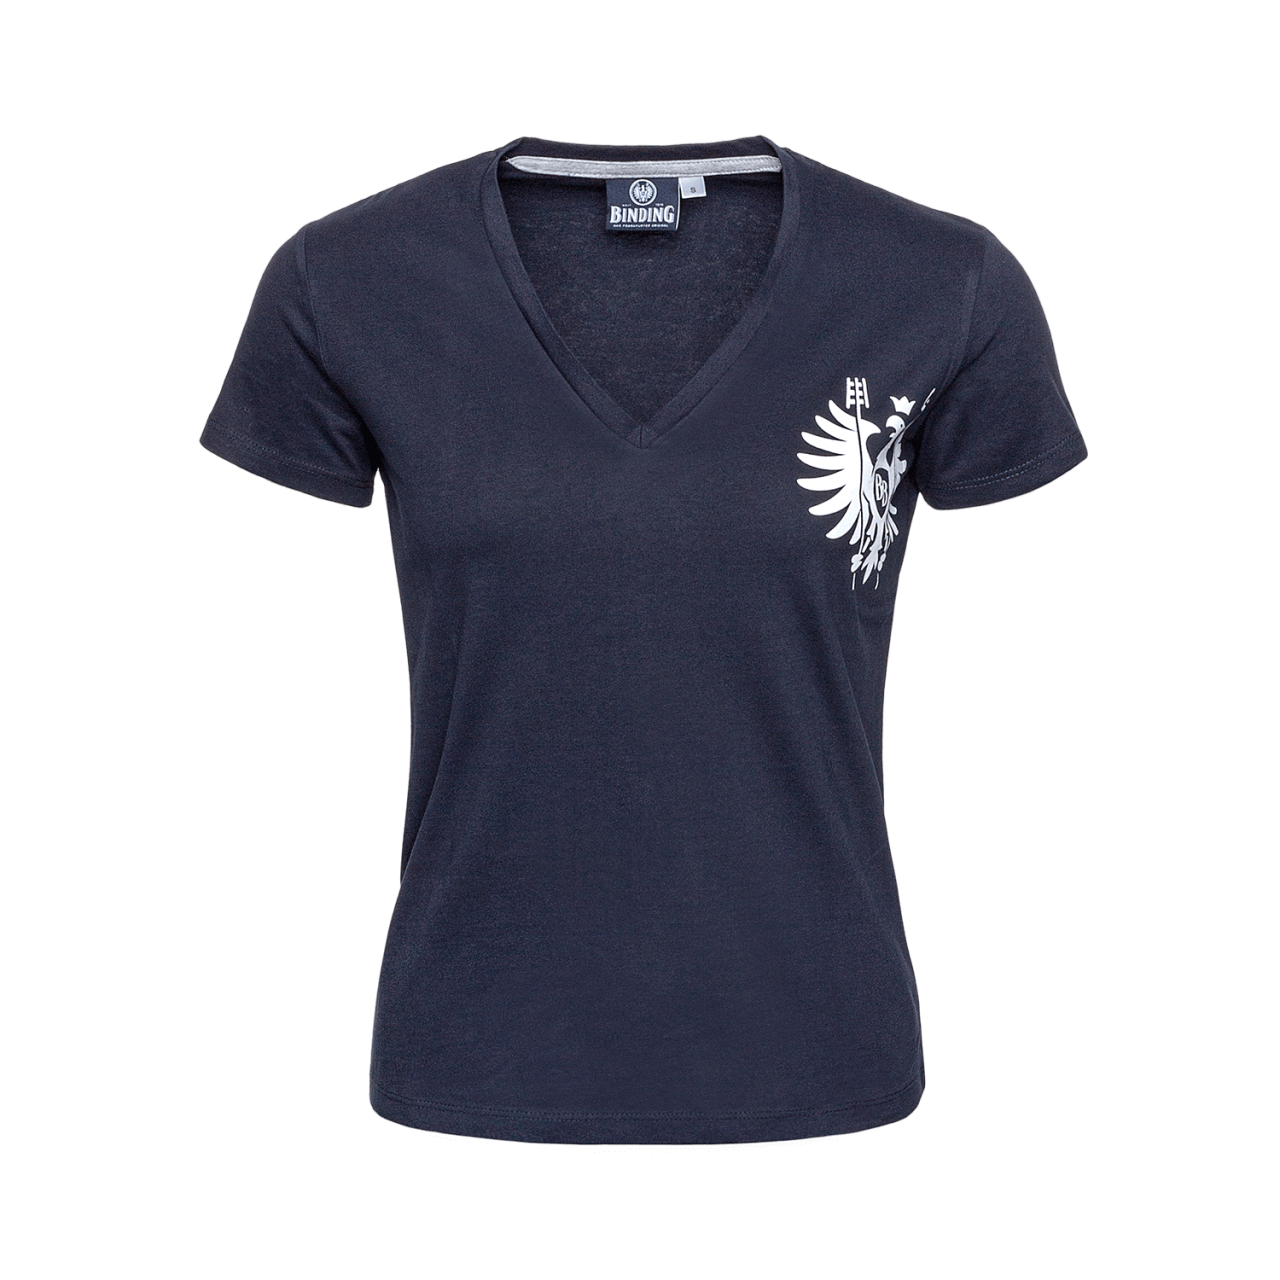 Frontalansicht Binding T-Shirt blau mit Binding Logo in weiß